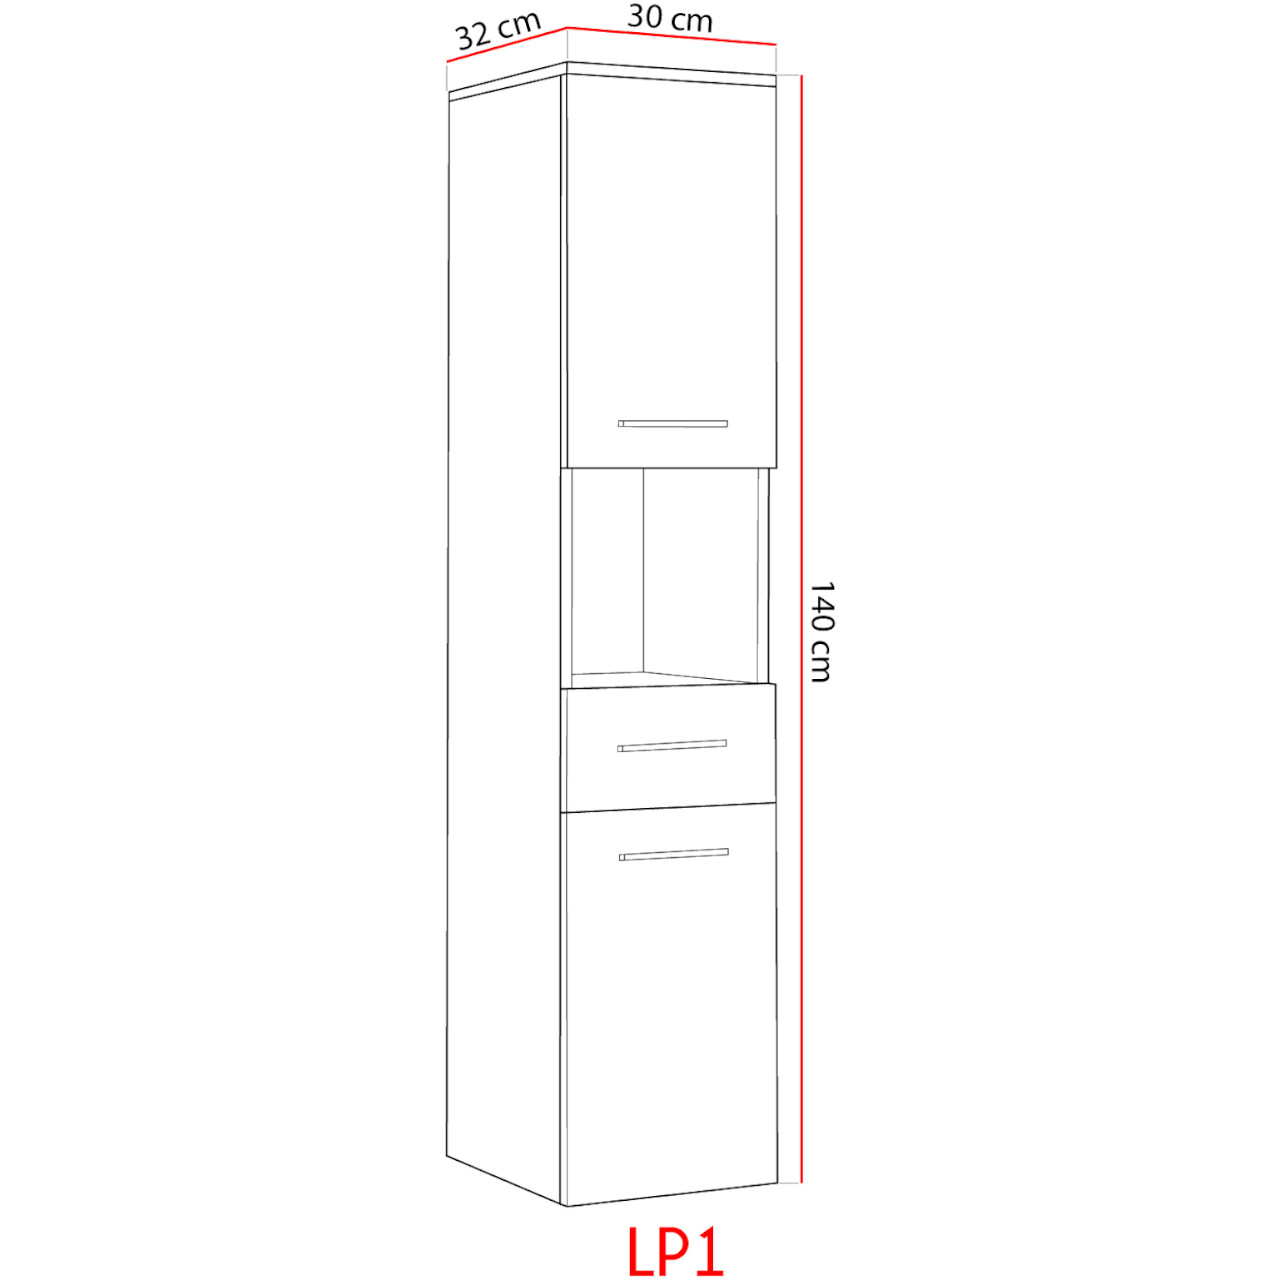 Badezimmer-Hochschrank LUPO LP1 weiß hochglanz